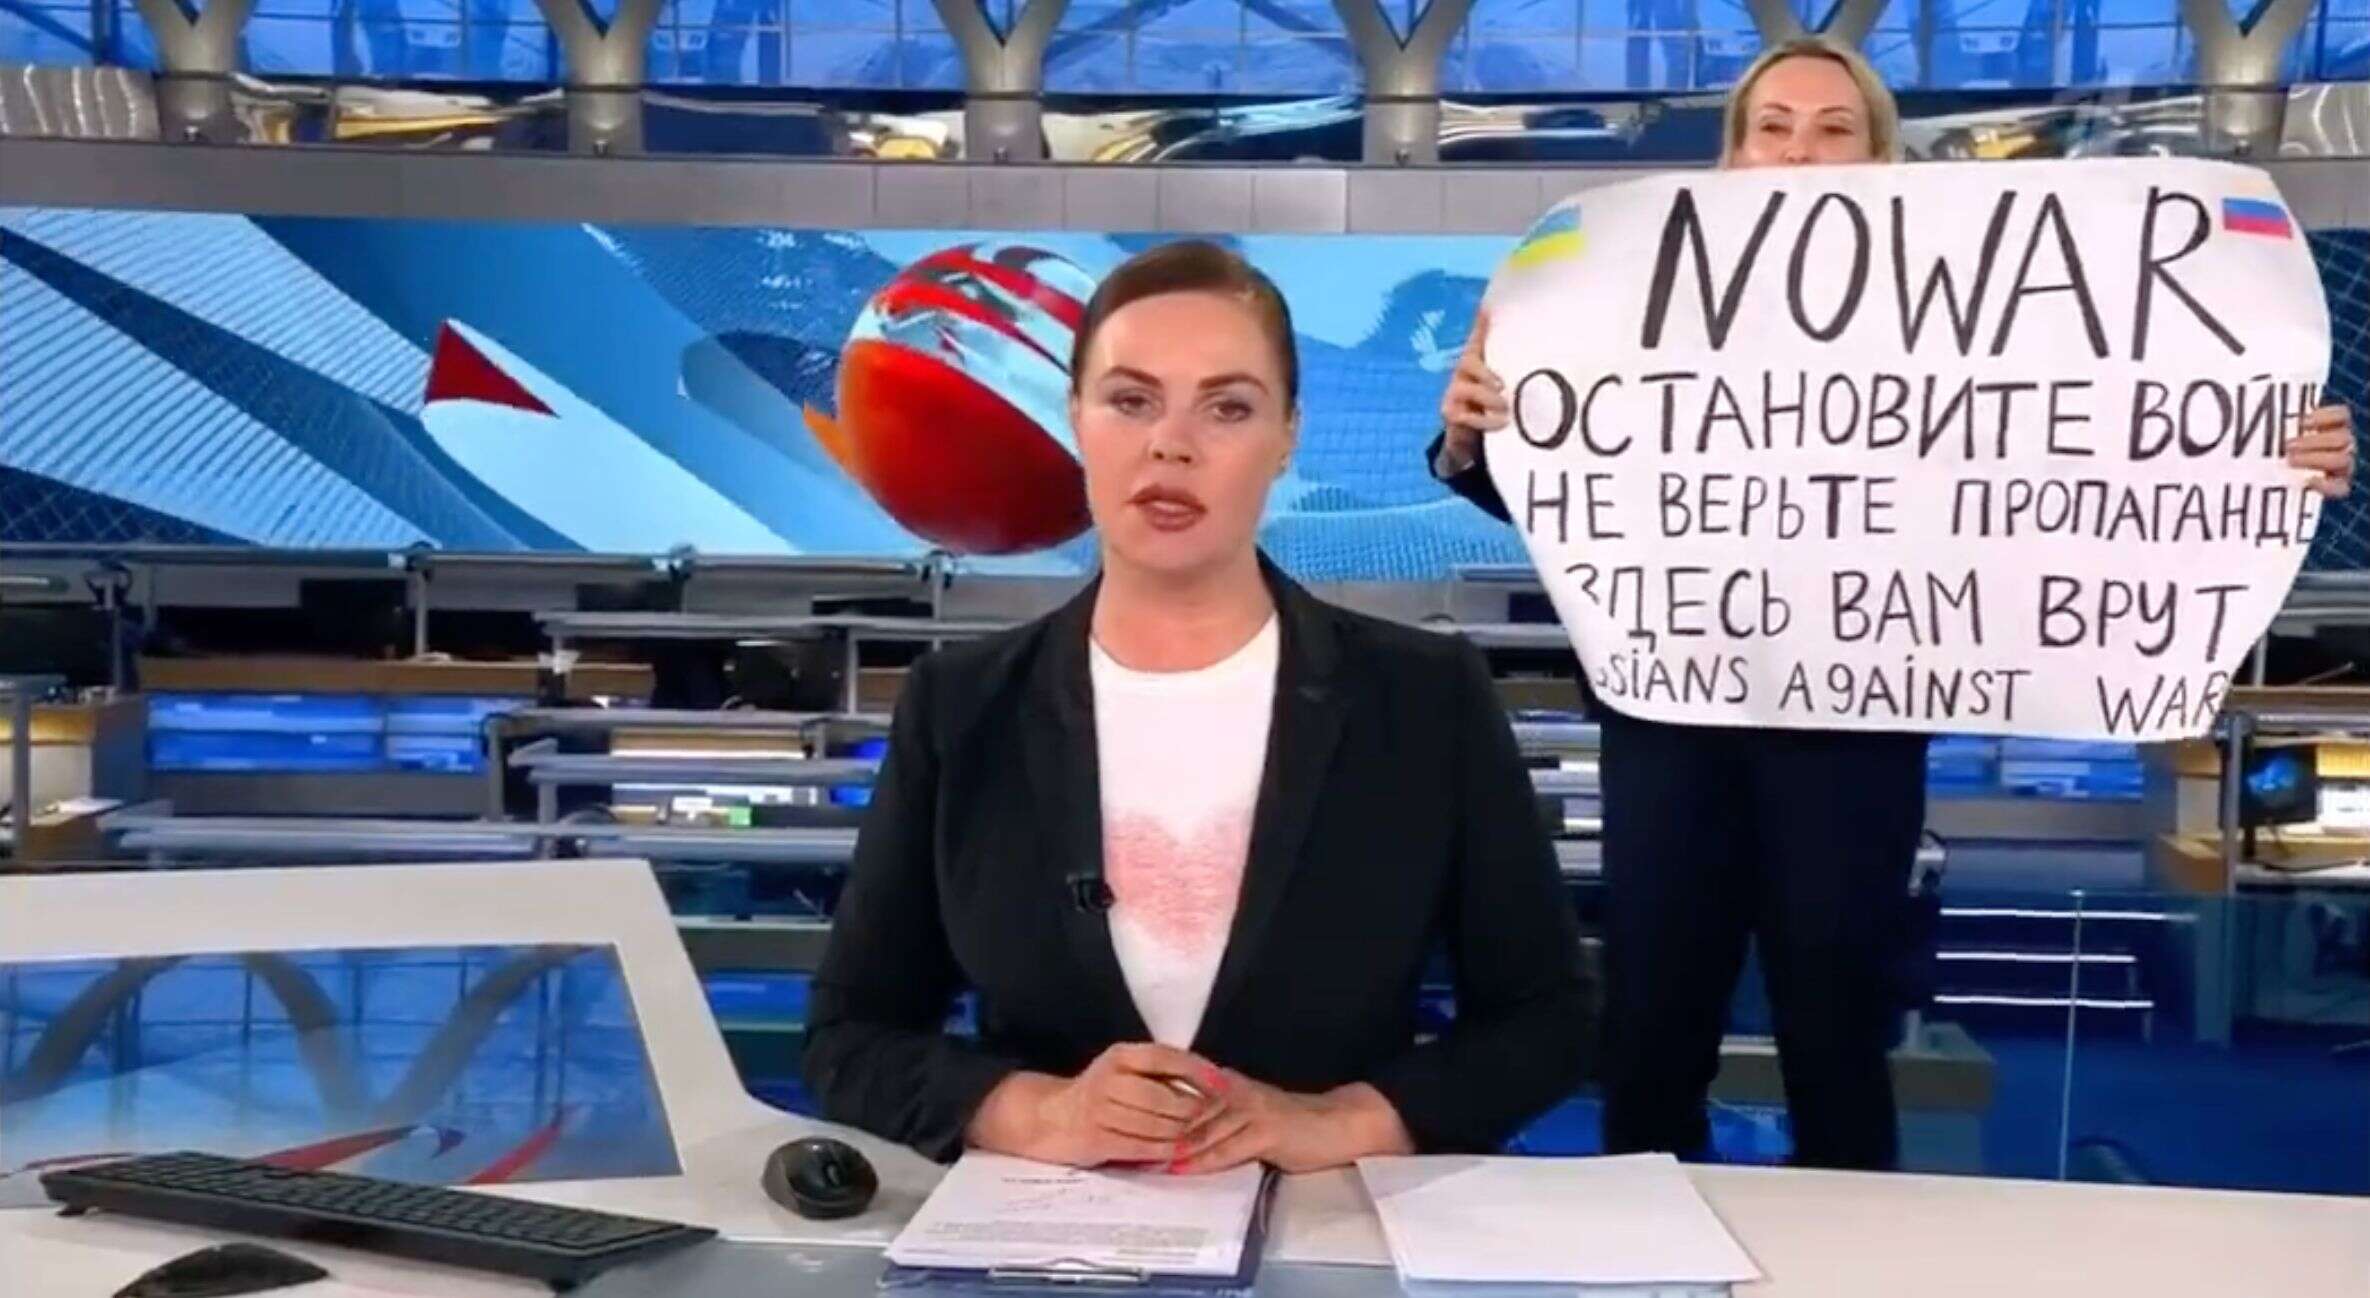 Marina Ovsiannikova, journaliste pour la principale chaîne de Russie, Pervi Kanal, avait interrompu le journal télévisé en diffusant un message contre la guerre en Ukraine. Elle a refusé la proposition d'asile d'Emmanuel Macron.